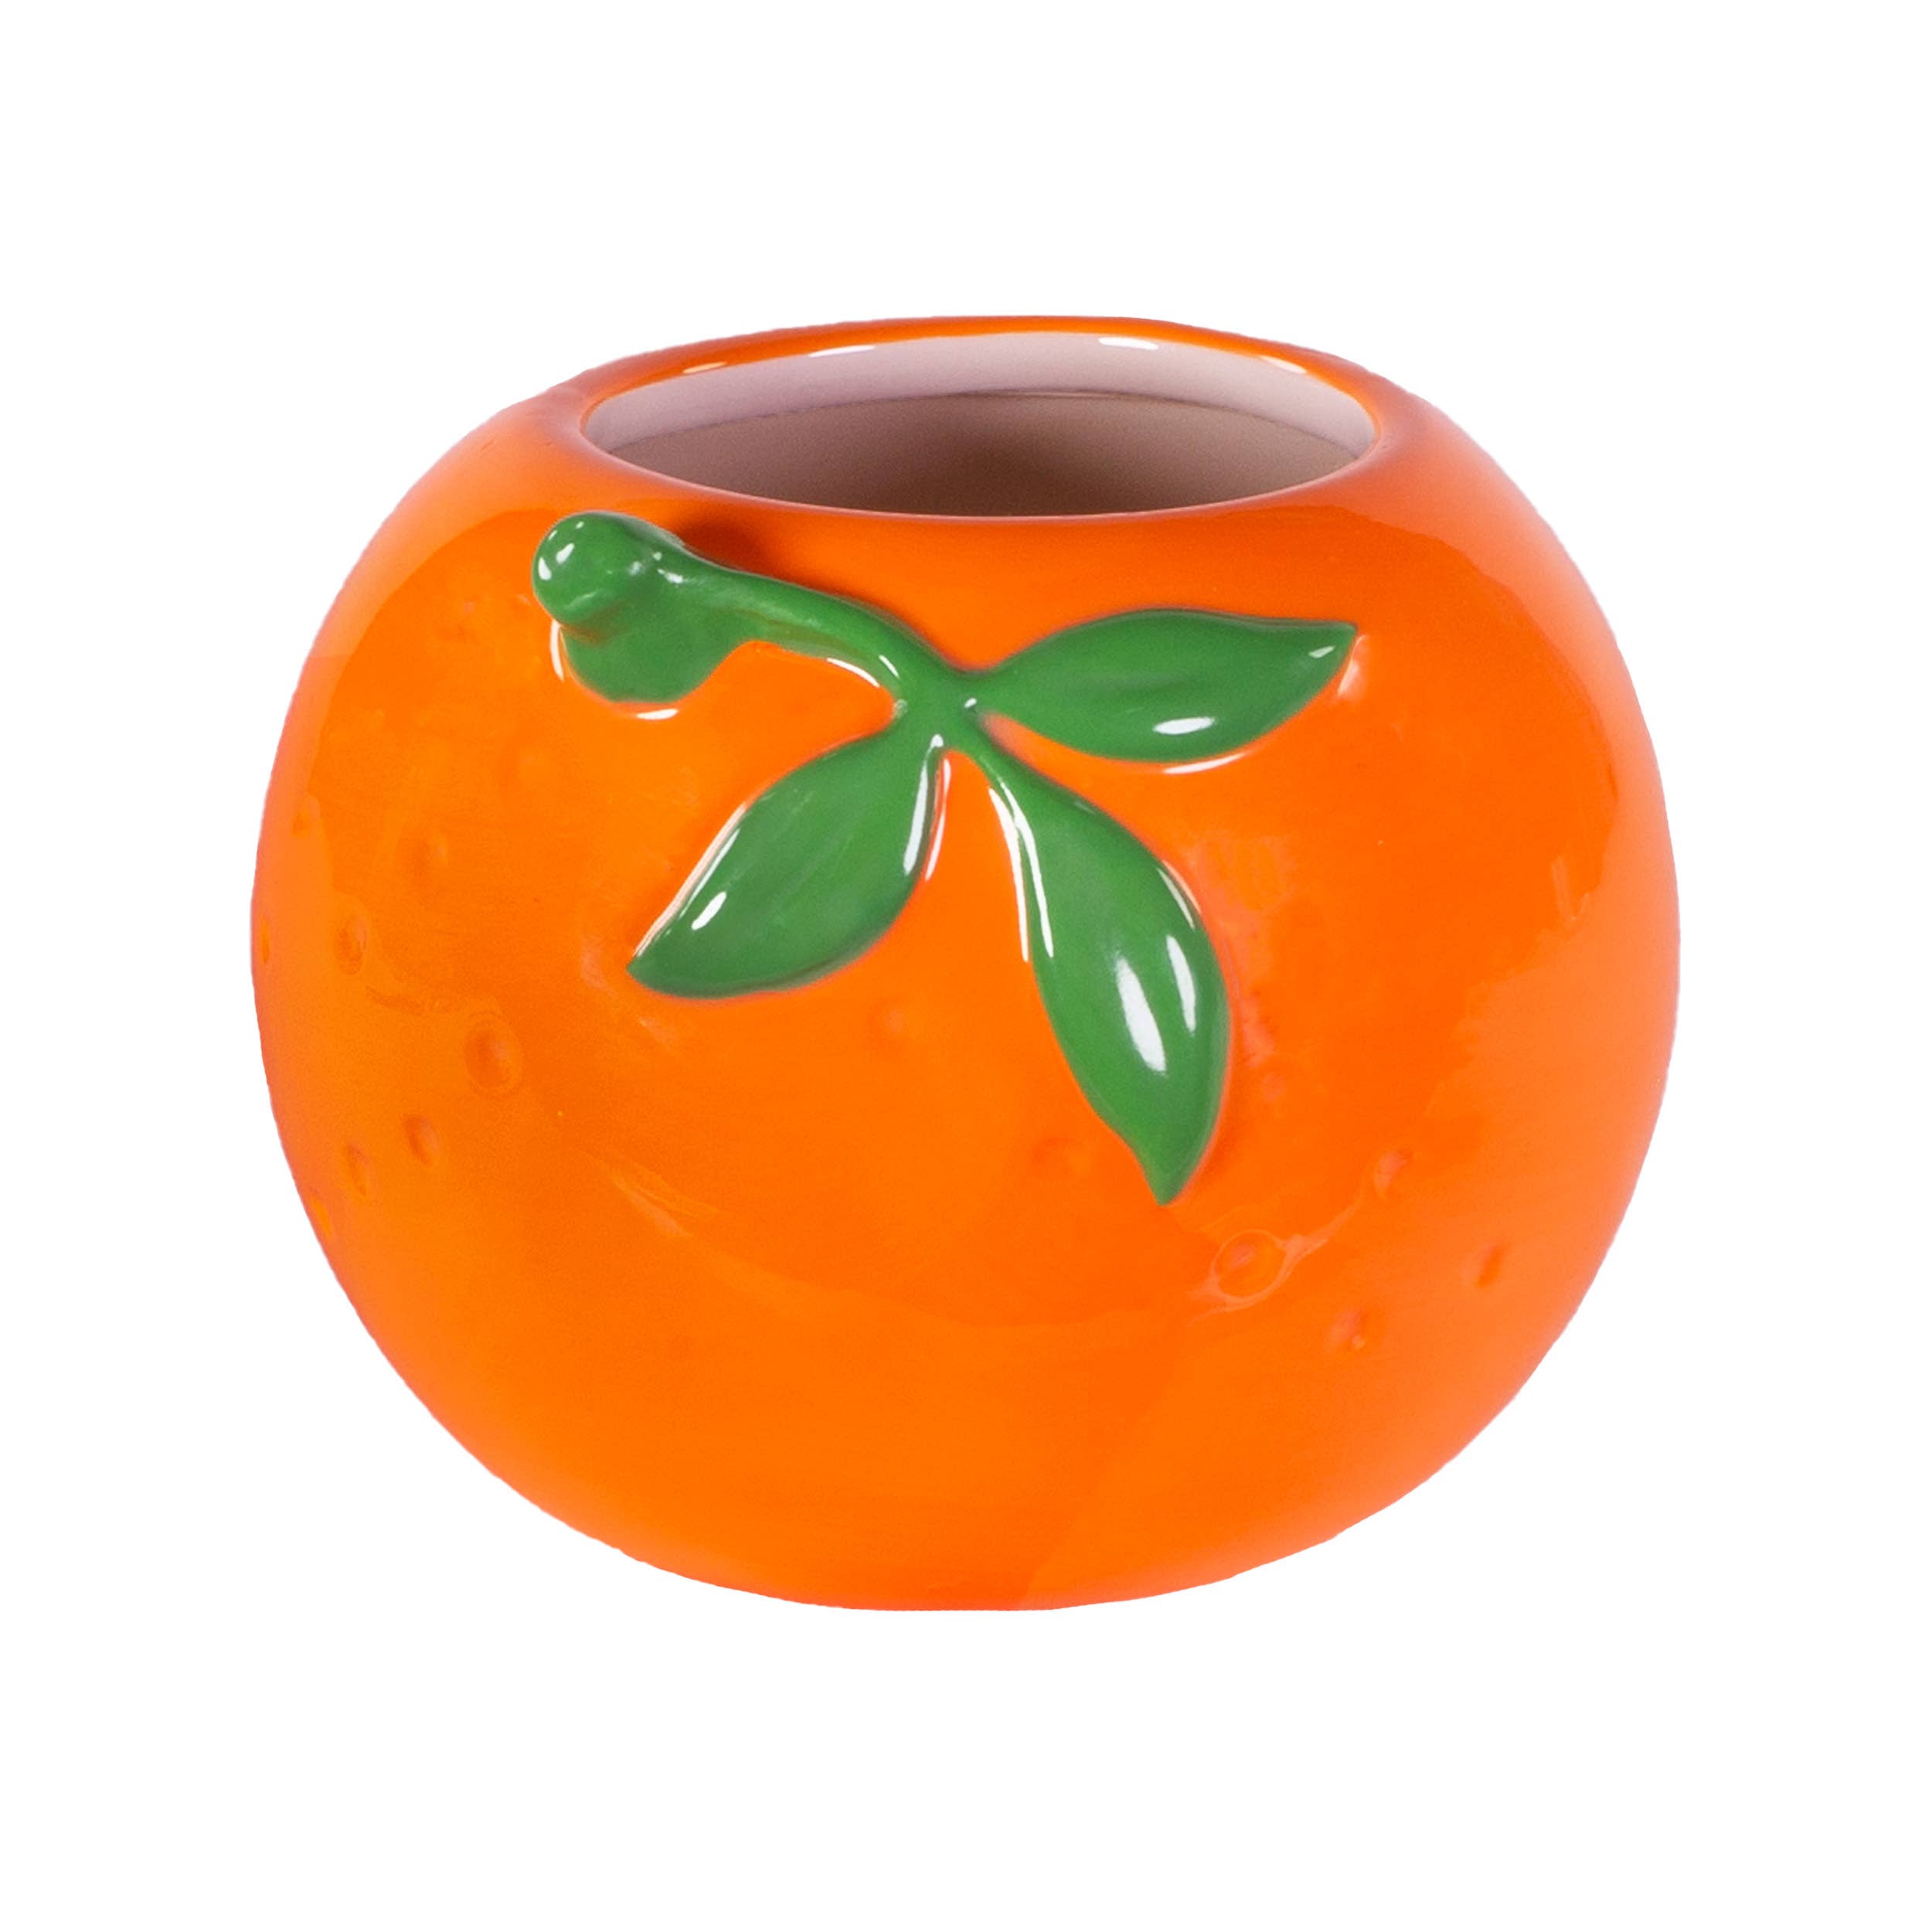 Ceramic Orange Planter/Pen Cup